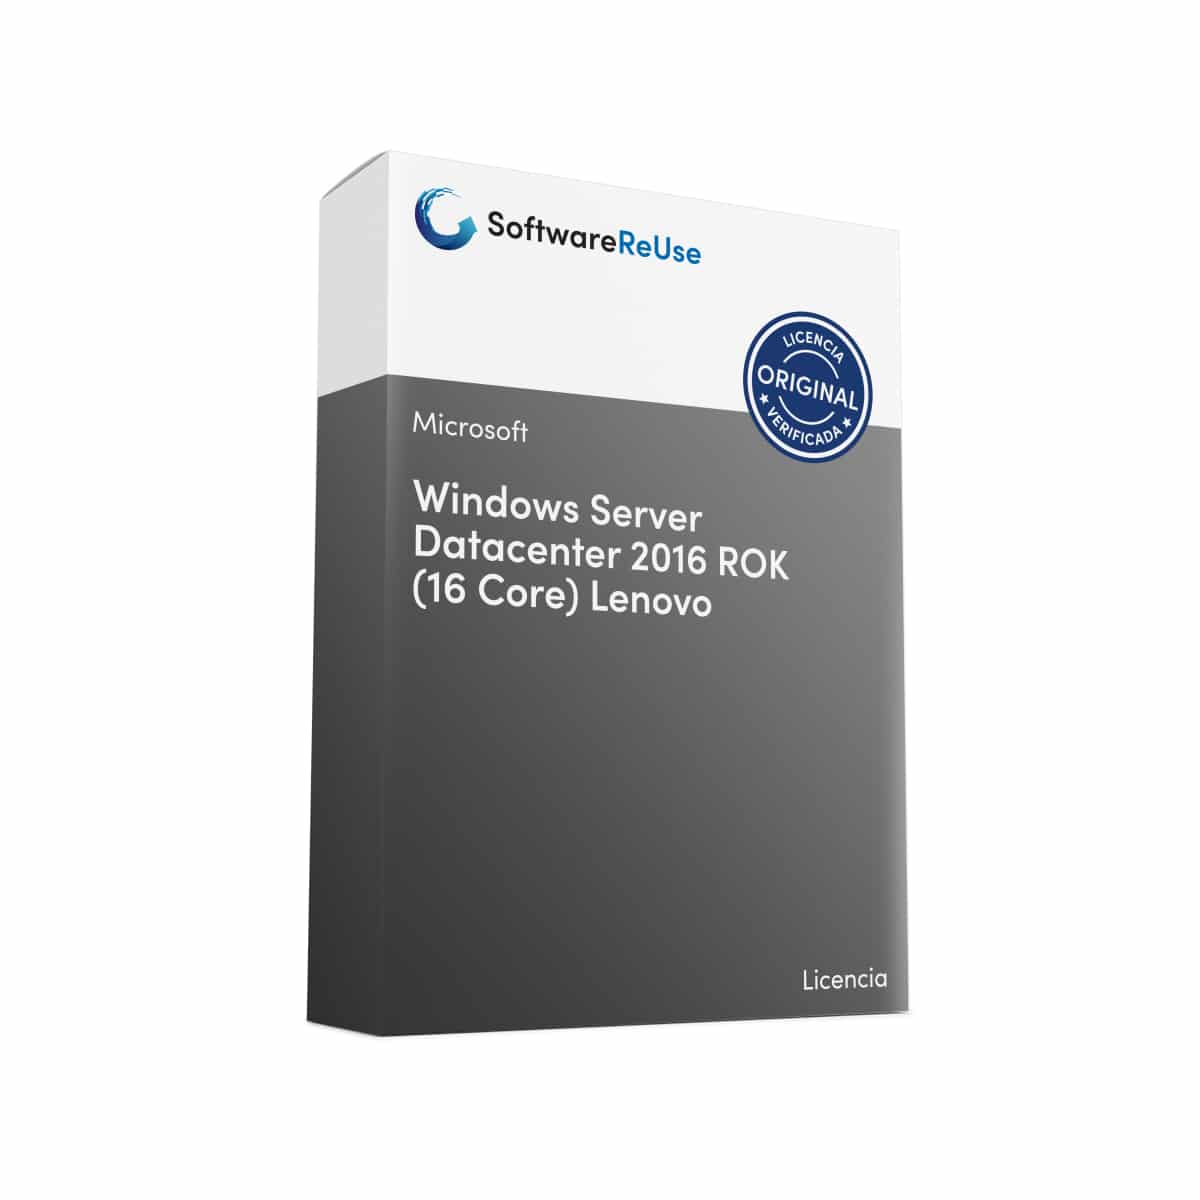 Windows Server Datacenter 2016 ROK 16 Core Lenovo – ES